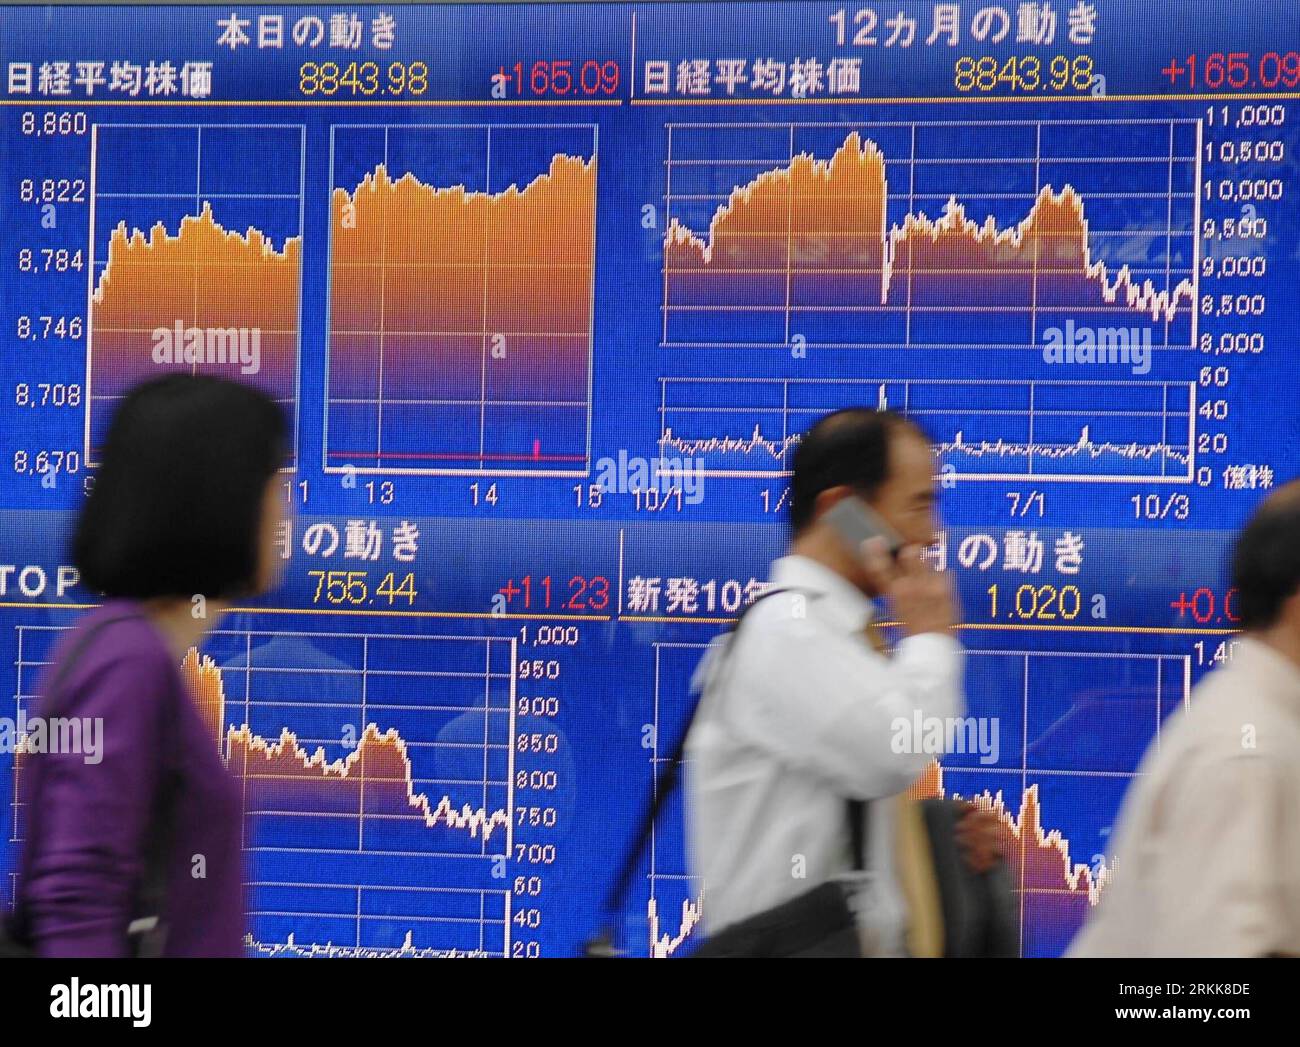 Bildnummer : 56210961 Datum : 24.10.2011 Copyright : imago/Xinhua (111024) -- TOKYO, 24 octobre 2011 (Xinhua) -- des piétons marchent devant un index boursier devant une maison de courtage à Tokyo le 24 octobre 2011. Les actions japonaises ont fortement augmenté lundi. La moyenne des actions Nikkei sur 225 émissions a atteint 165,09 points, soit 1. 90 pour cent, à partir de vendredi à 8 843,98. L'indice TOPIx plus large de toutes les émissions de la première Section à la Bourse de Tokyo a terminé en hausse de 11,23 points, soit 1,51% à 755,44. (Xinhua/Kenichiro Seki) (zys) JAPAN-TOKYO-STOCKS PUBLICATIONxNOTxINxCHN Wirtschaft Börse Aktienindex Börsenkurse Anstieg Haus Banque D'Images